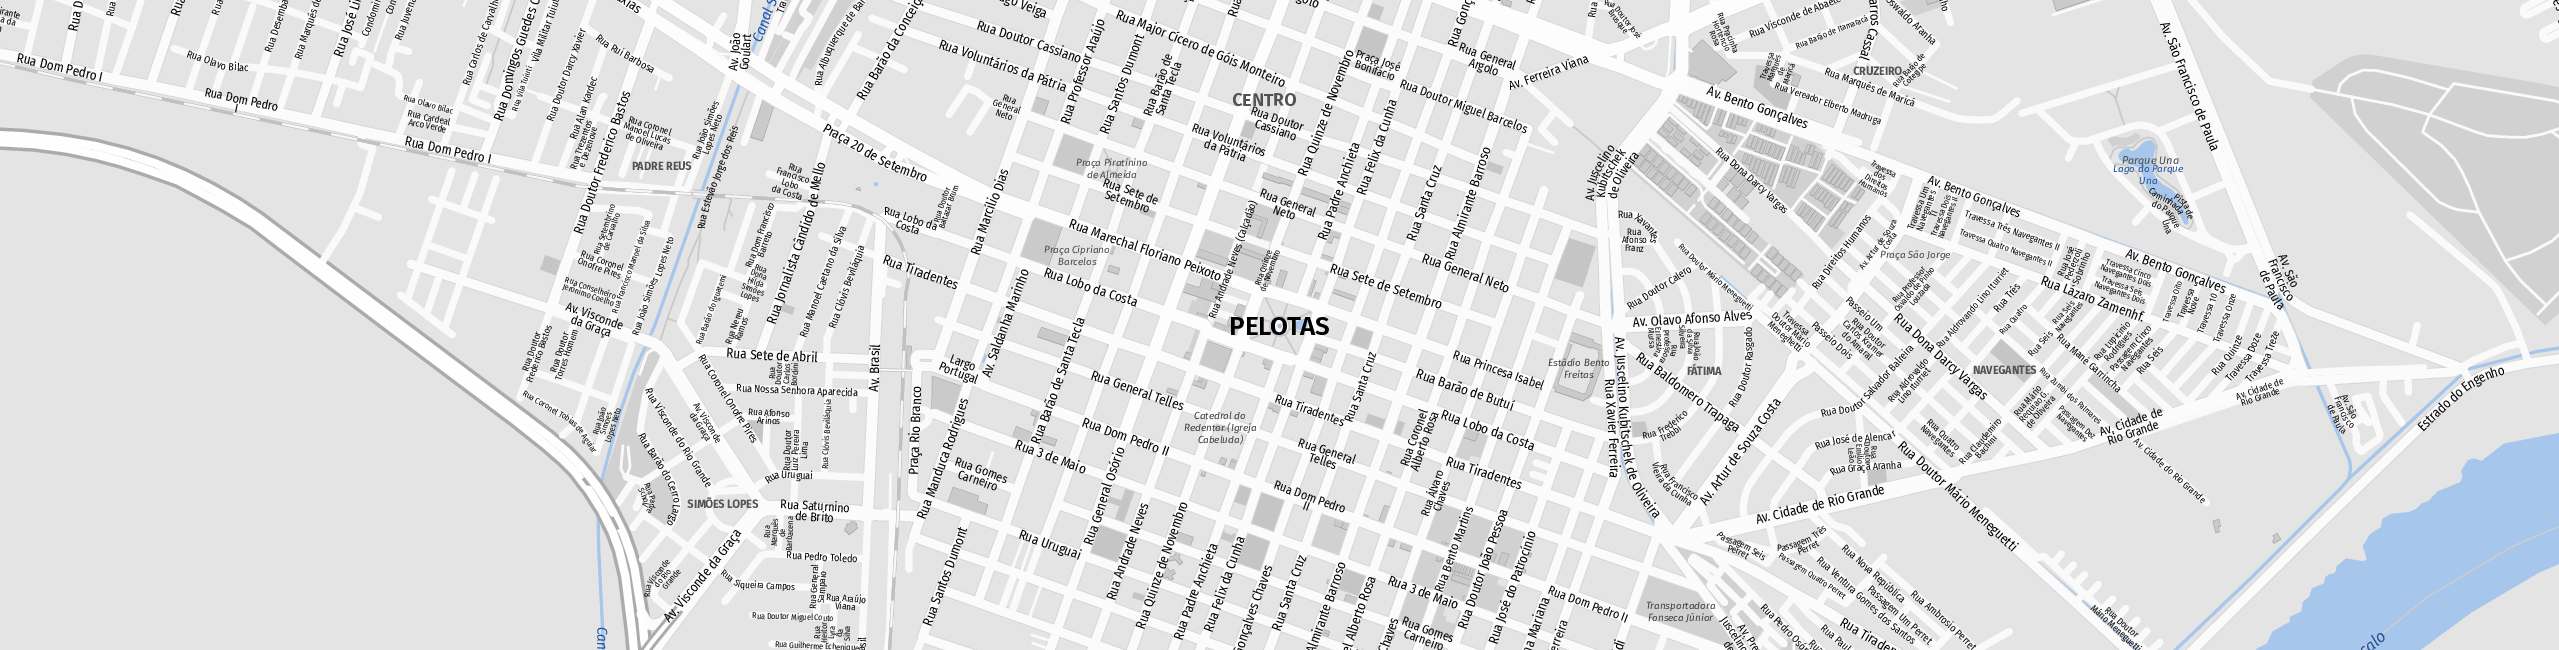 Stadtplan Pelotas zum Downloaden.